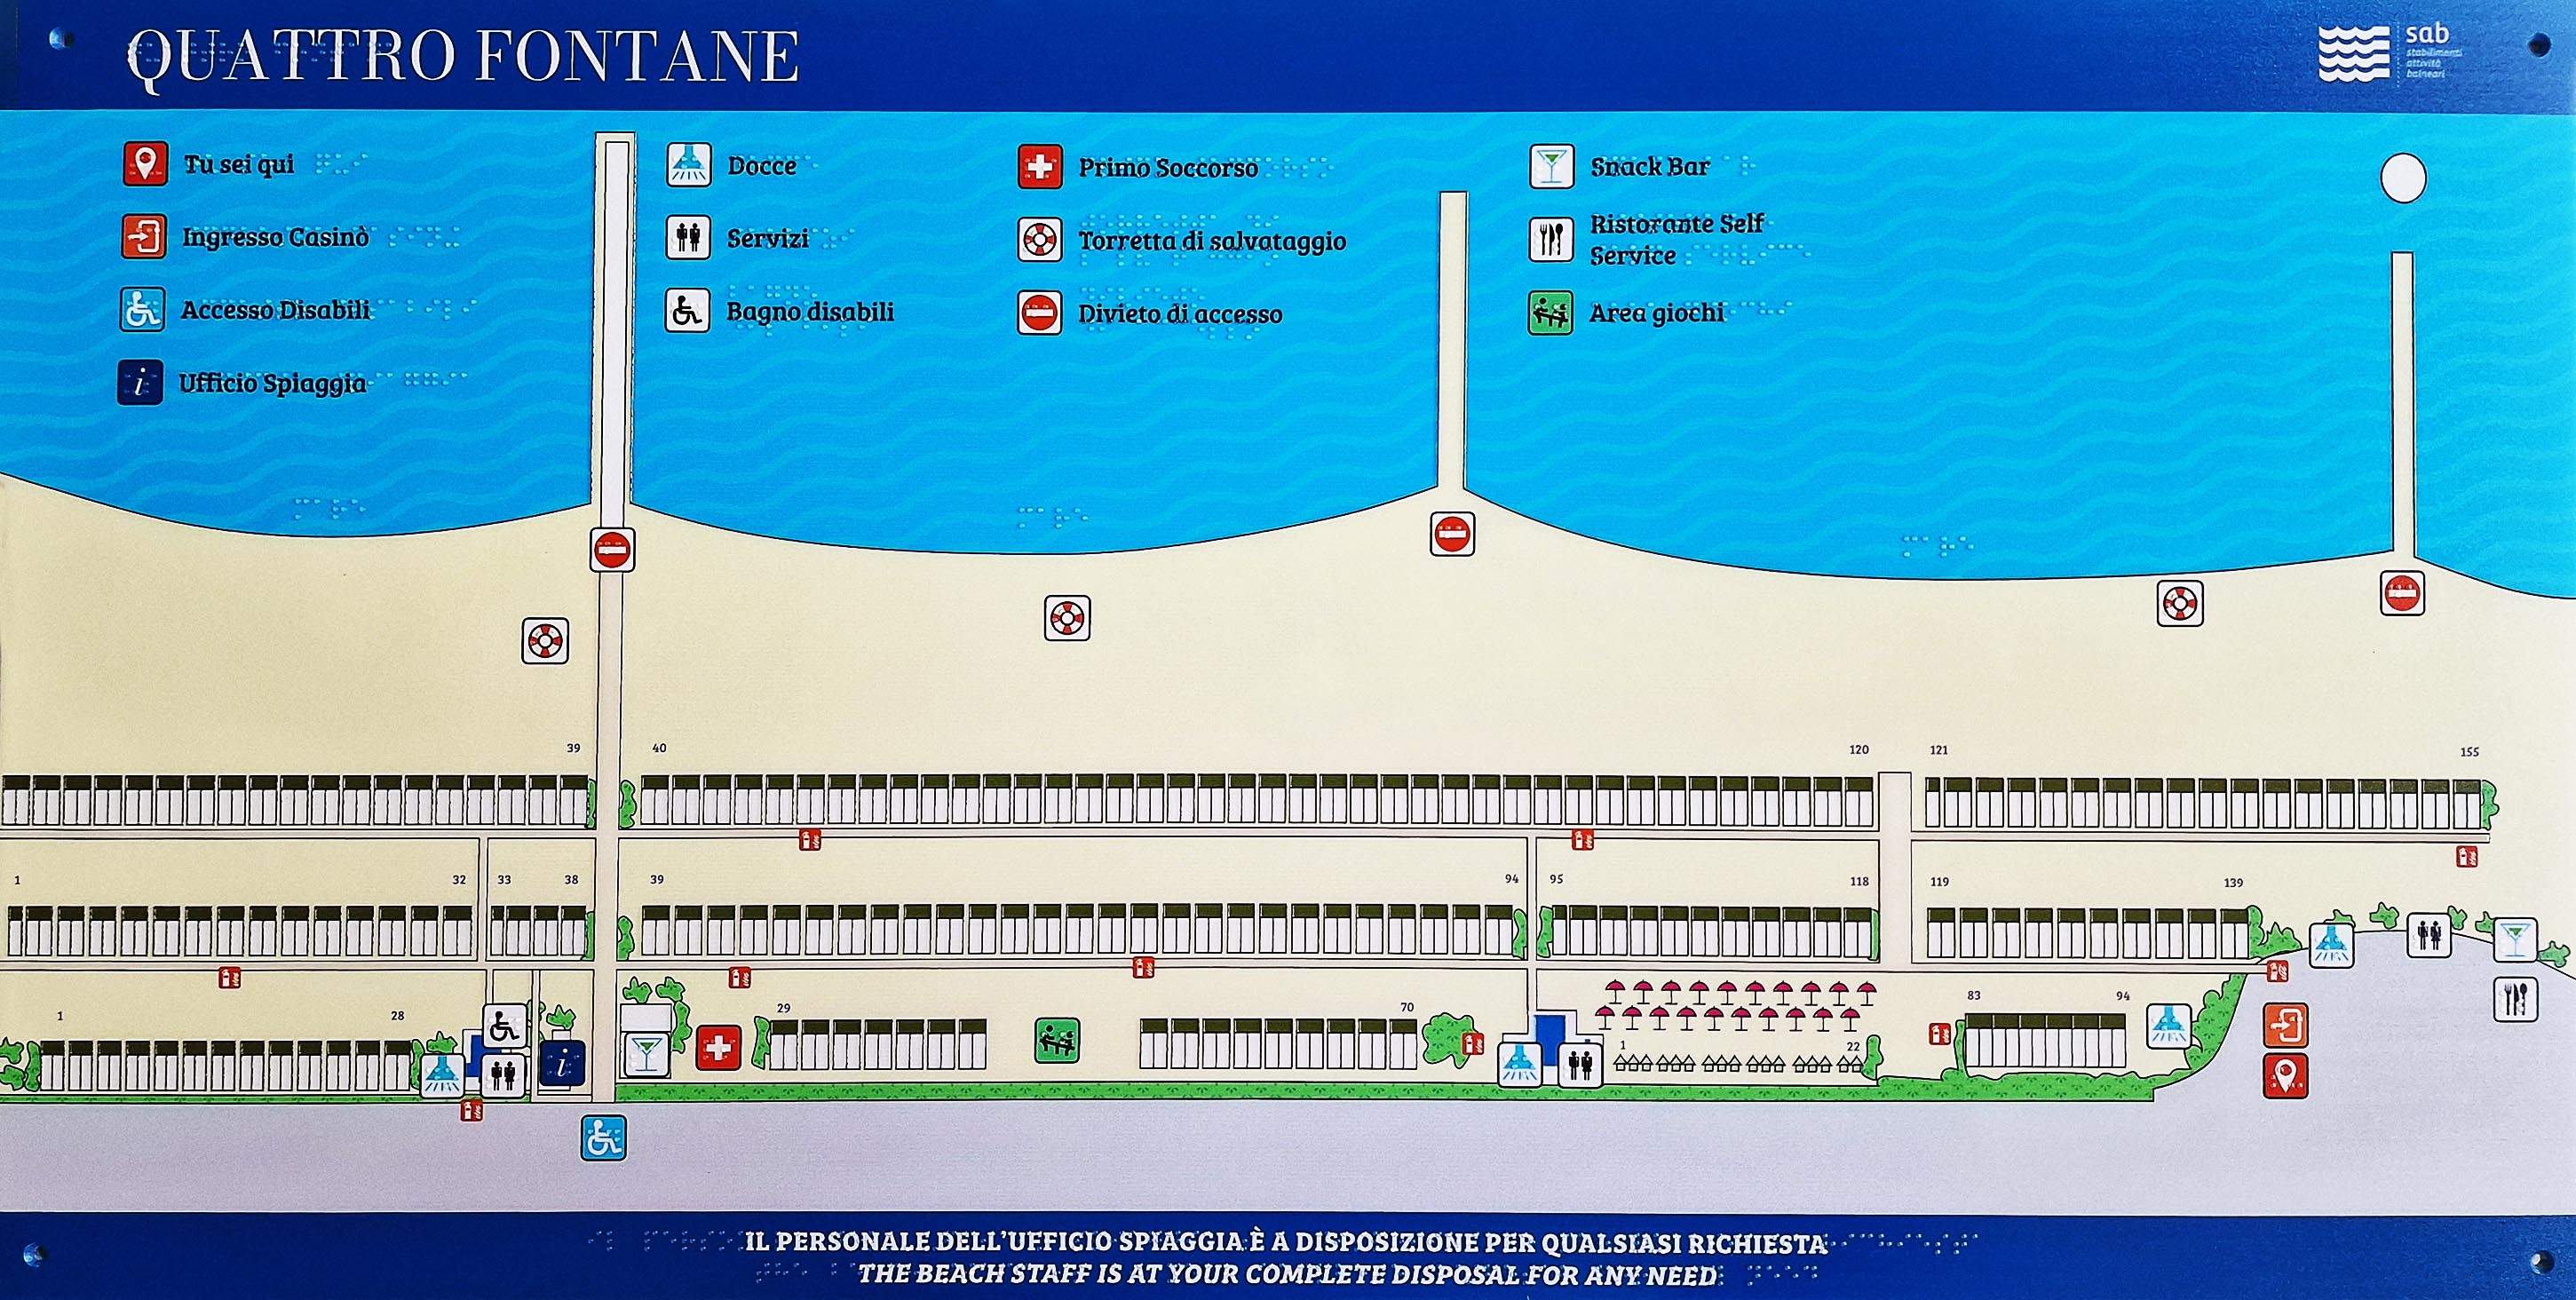 Mappa tattile - Spiaggia Quattro Fontane